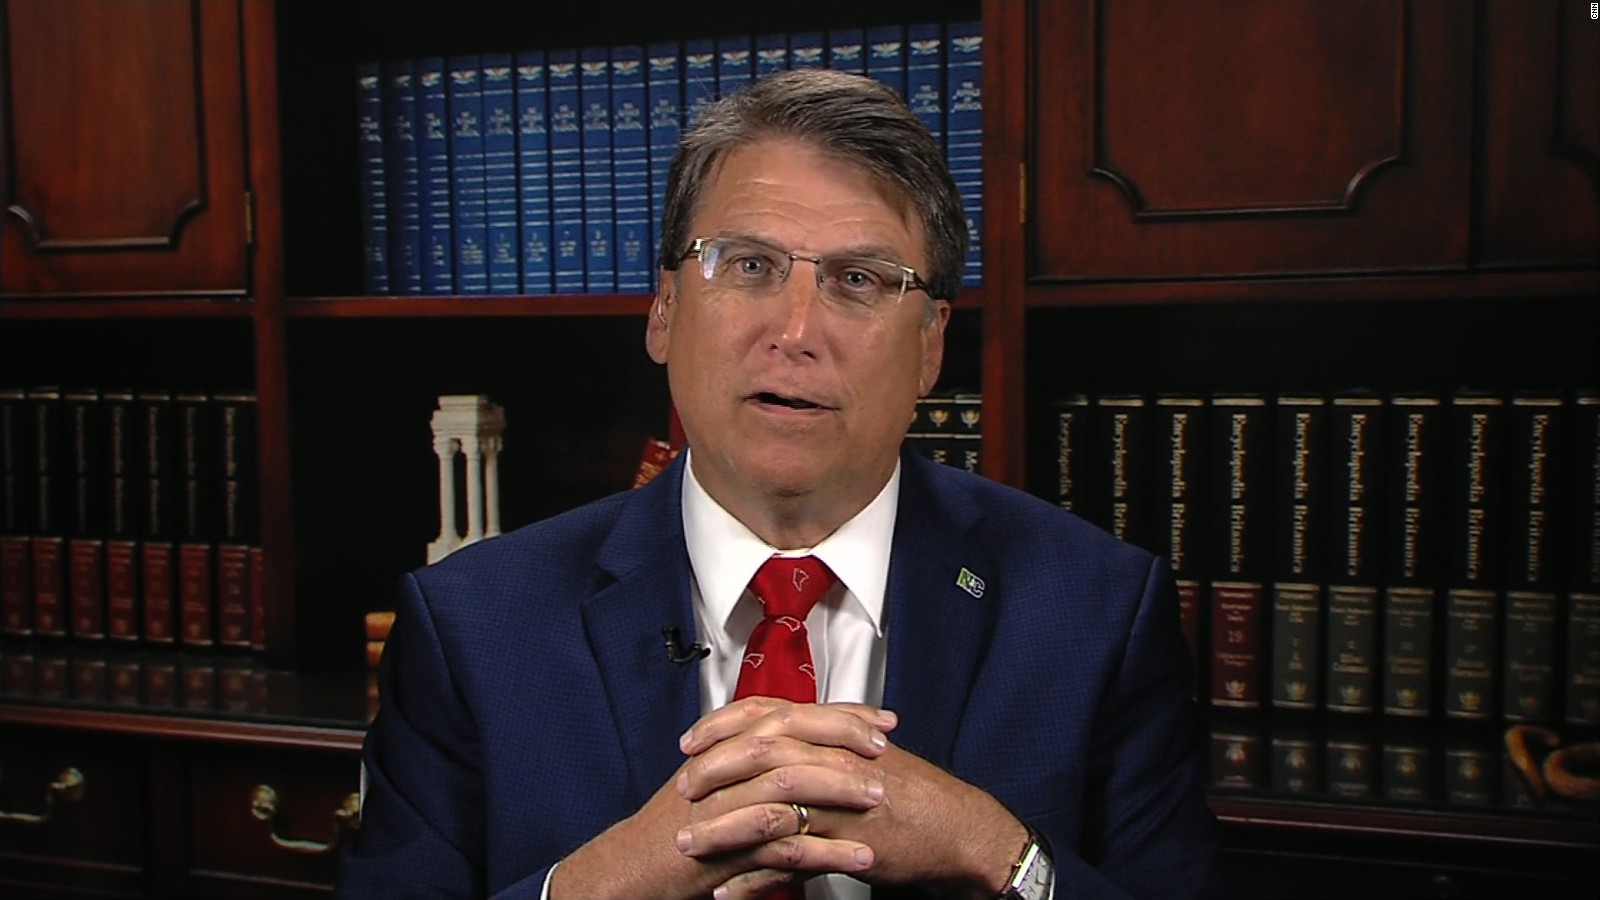 North Carolina Governor Defends Bathroom Law Cnn Video 